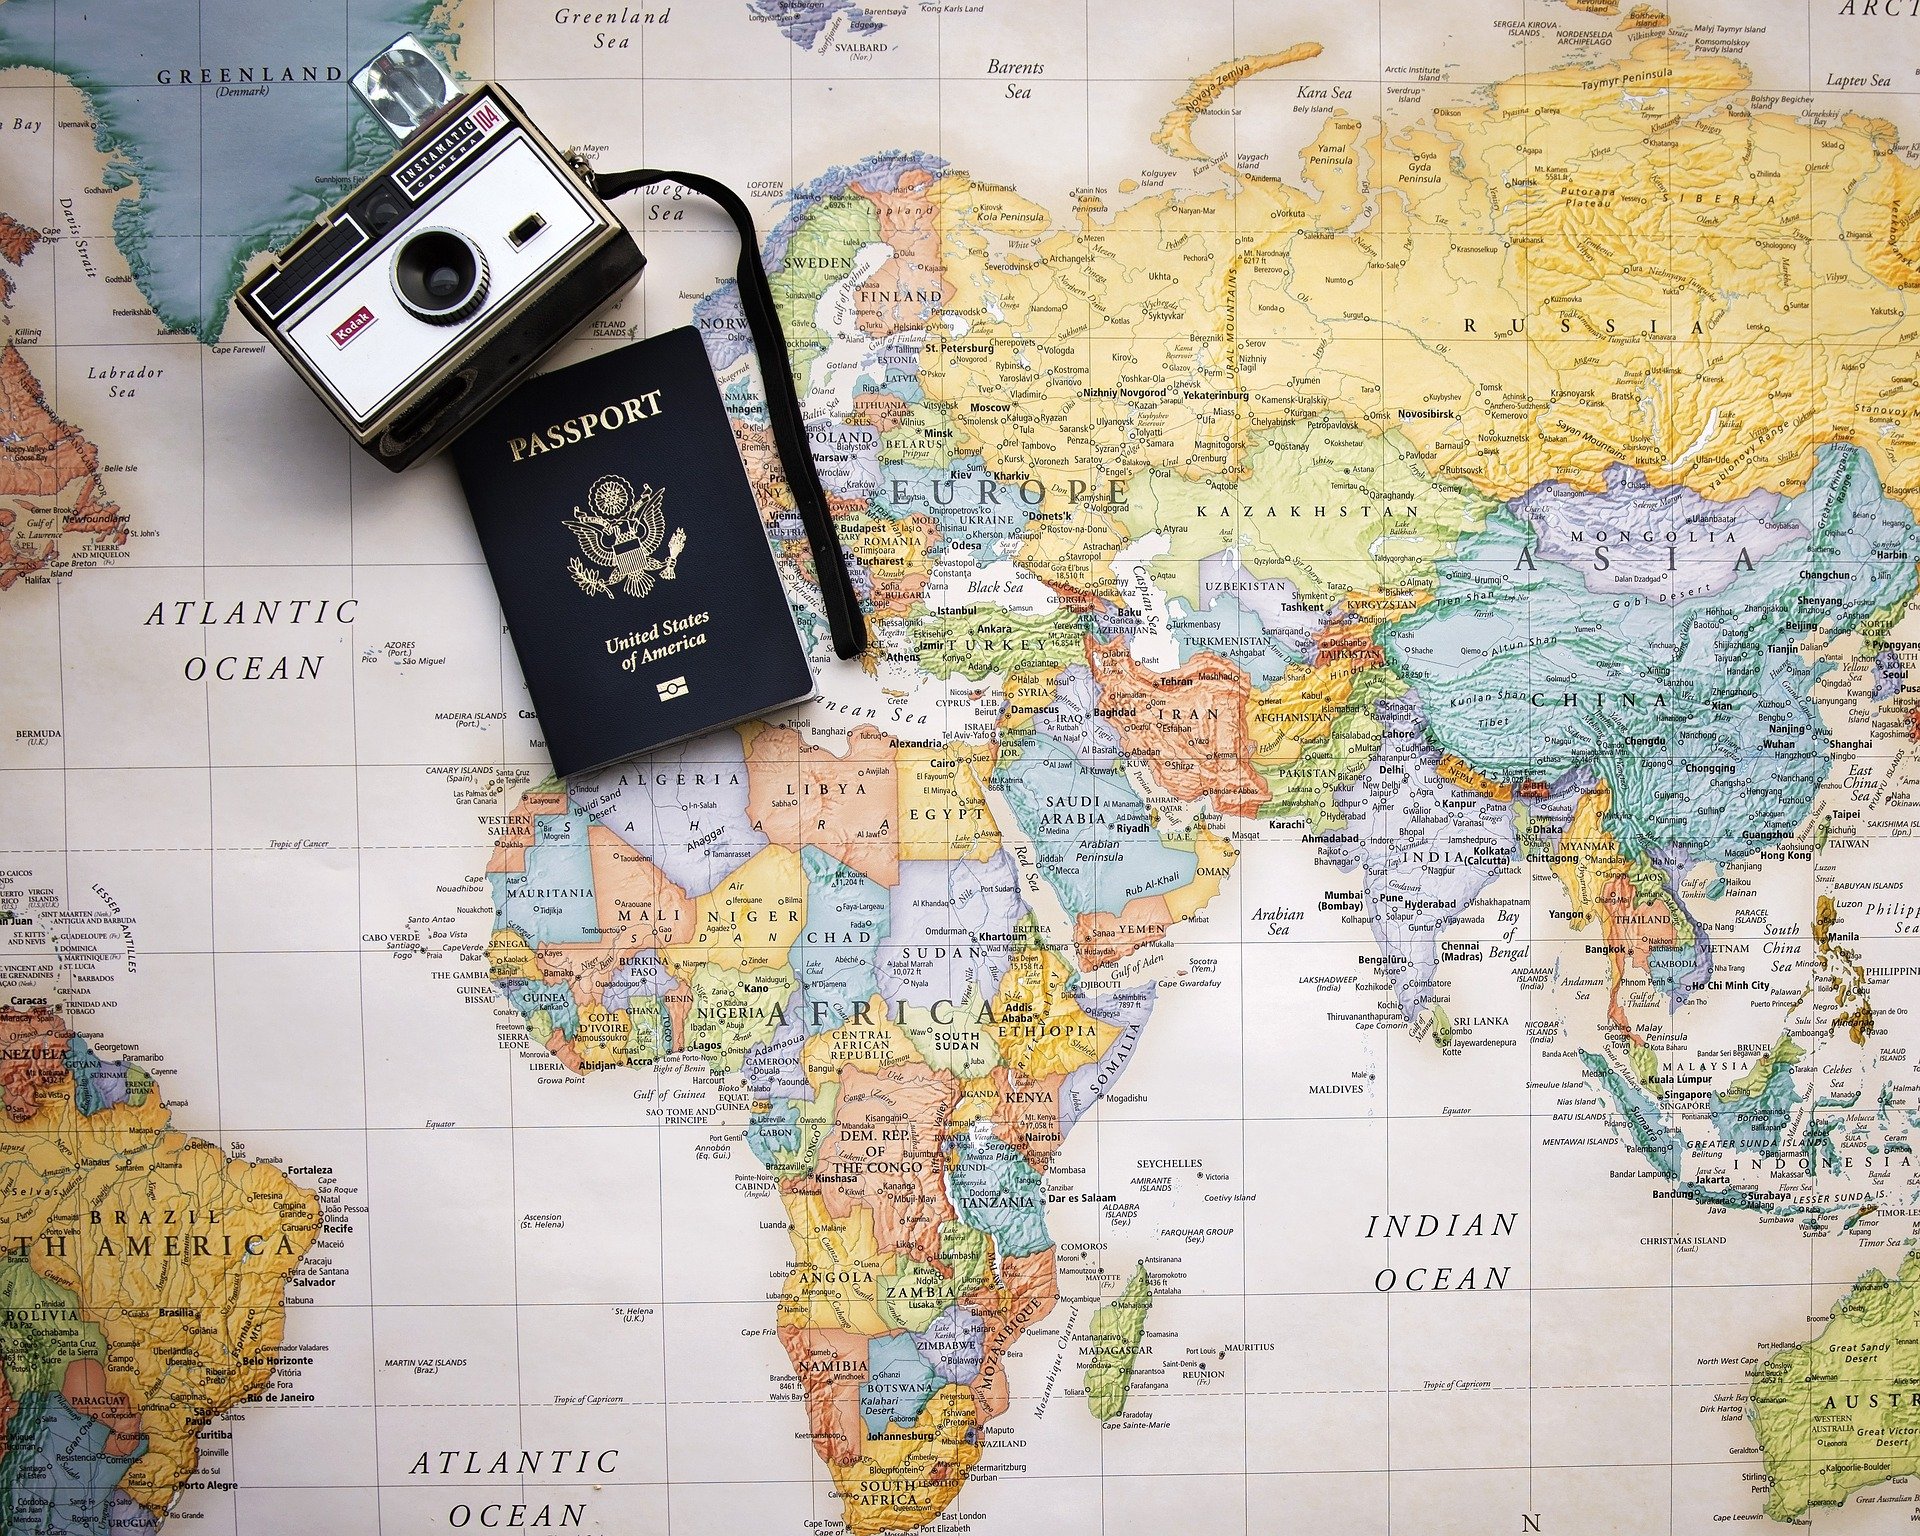 passport-2714675_1920 (c) Bild von Pam Patterson auf Pixabay